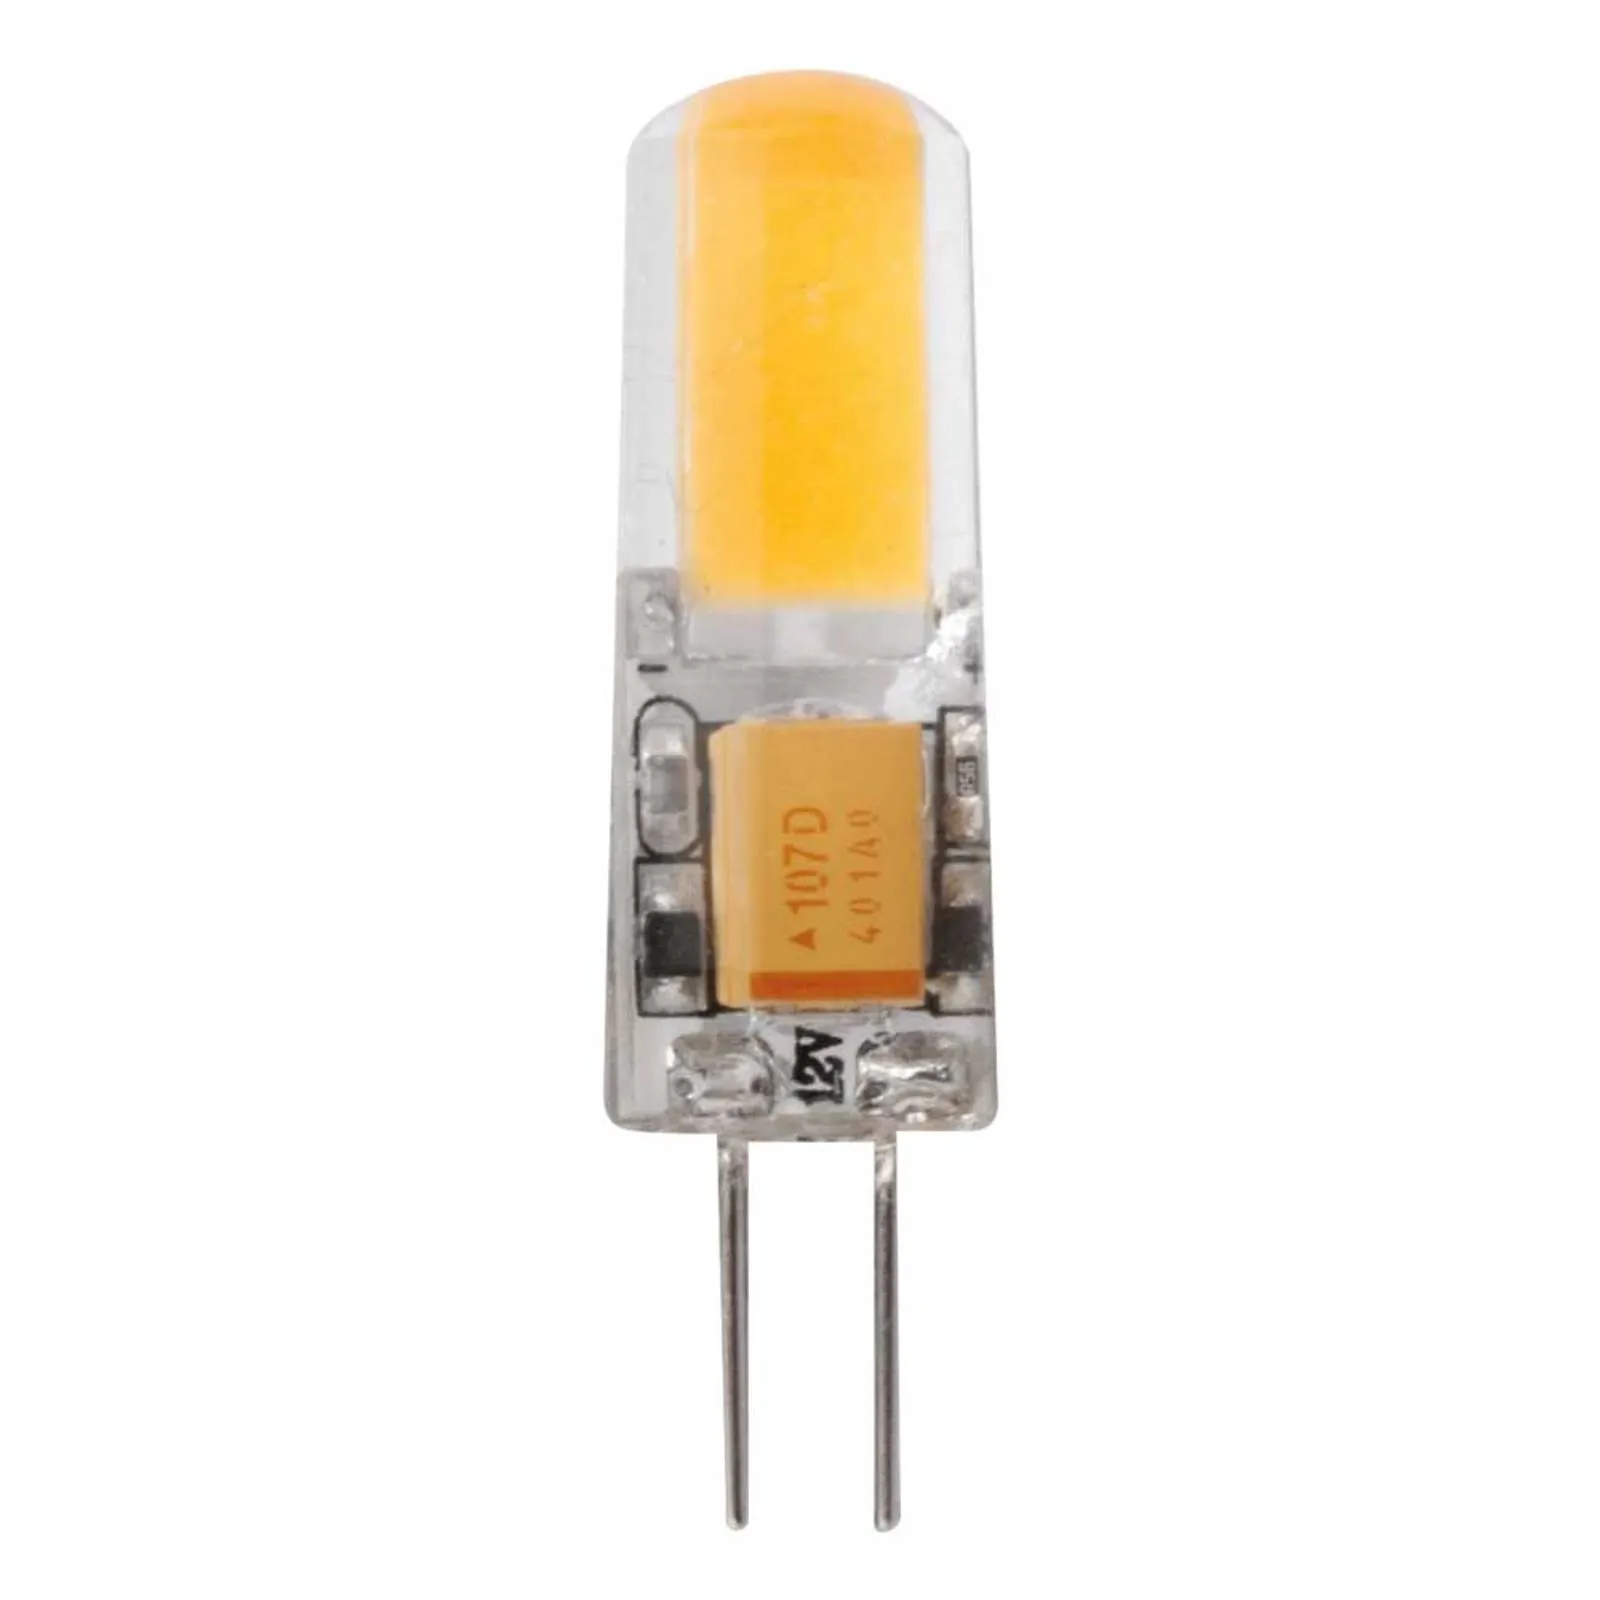 Bi-pin LED bulb G4 1.8 W warm white